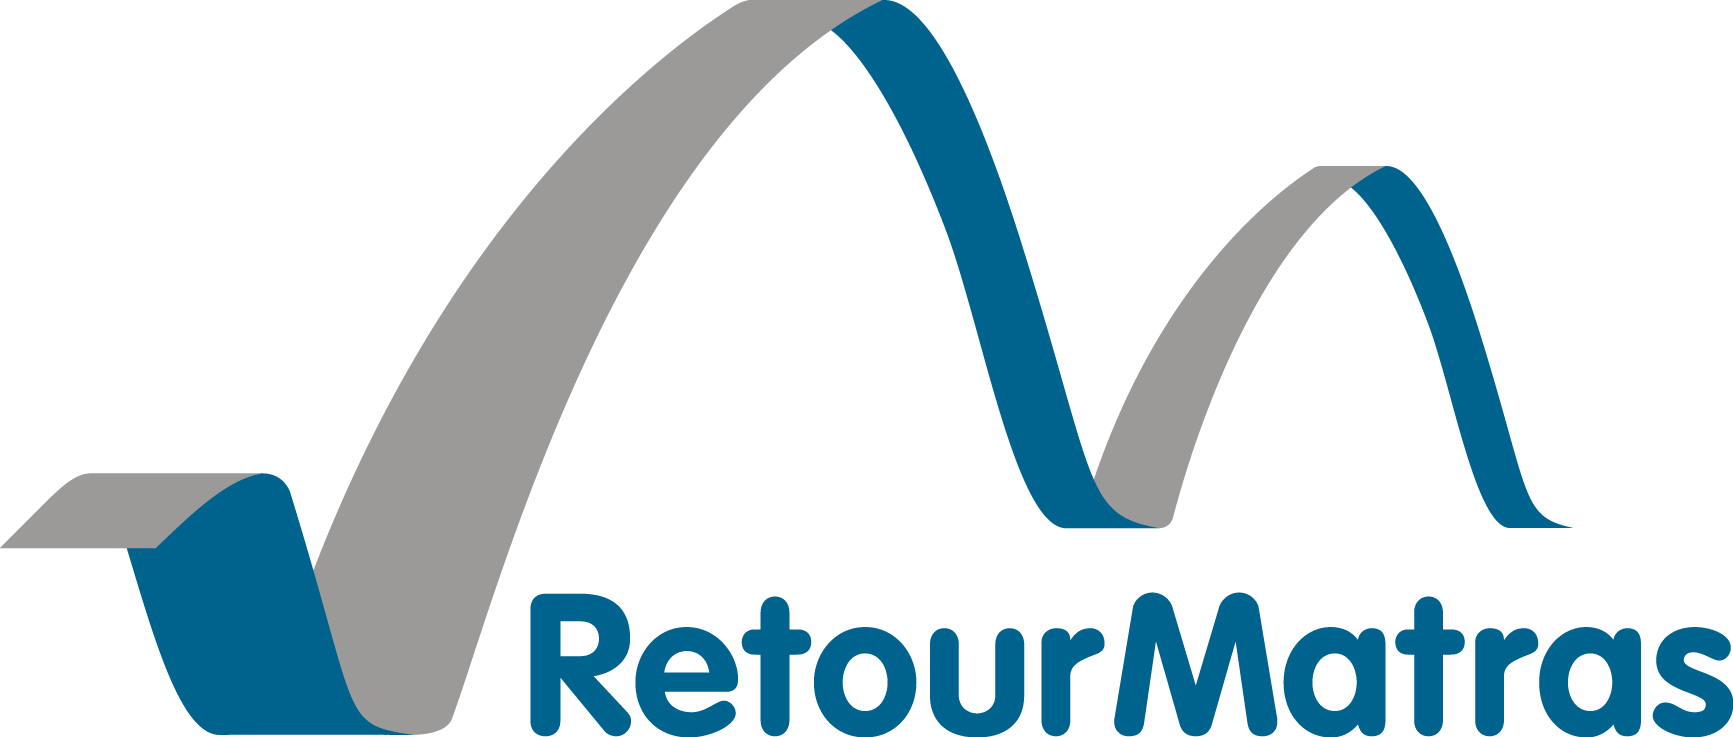 RetourMatras’s logo